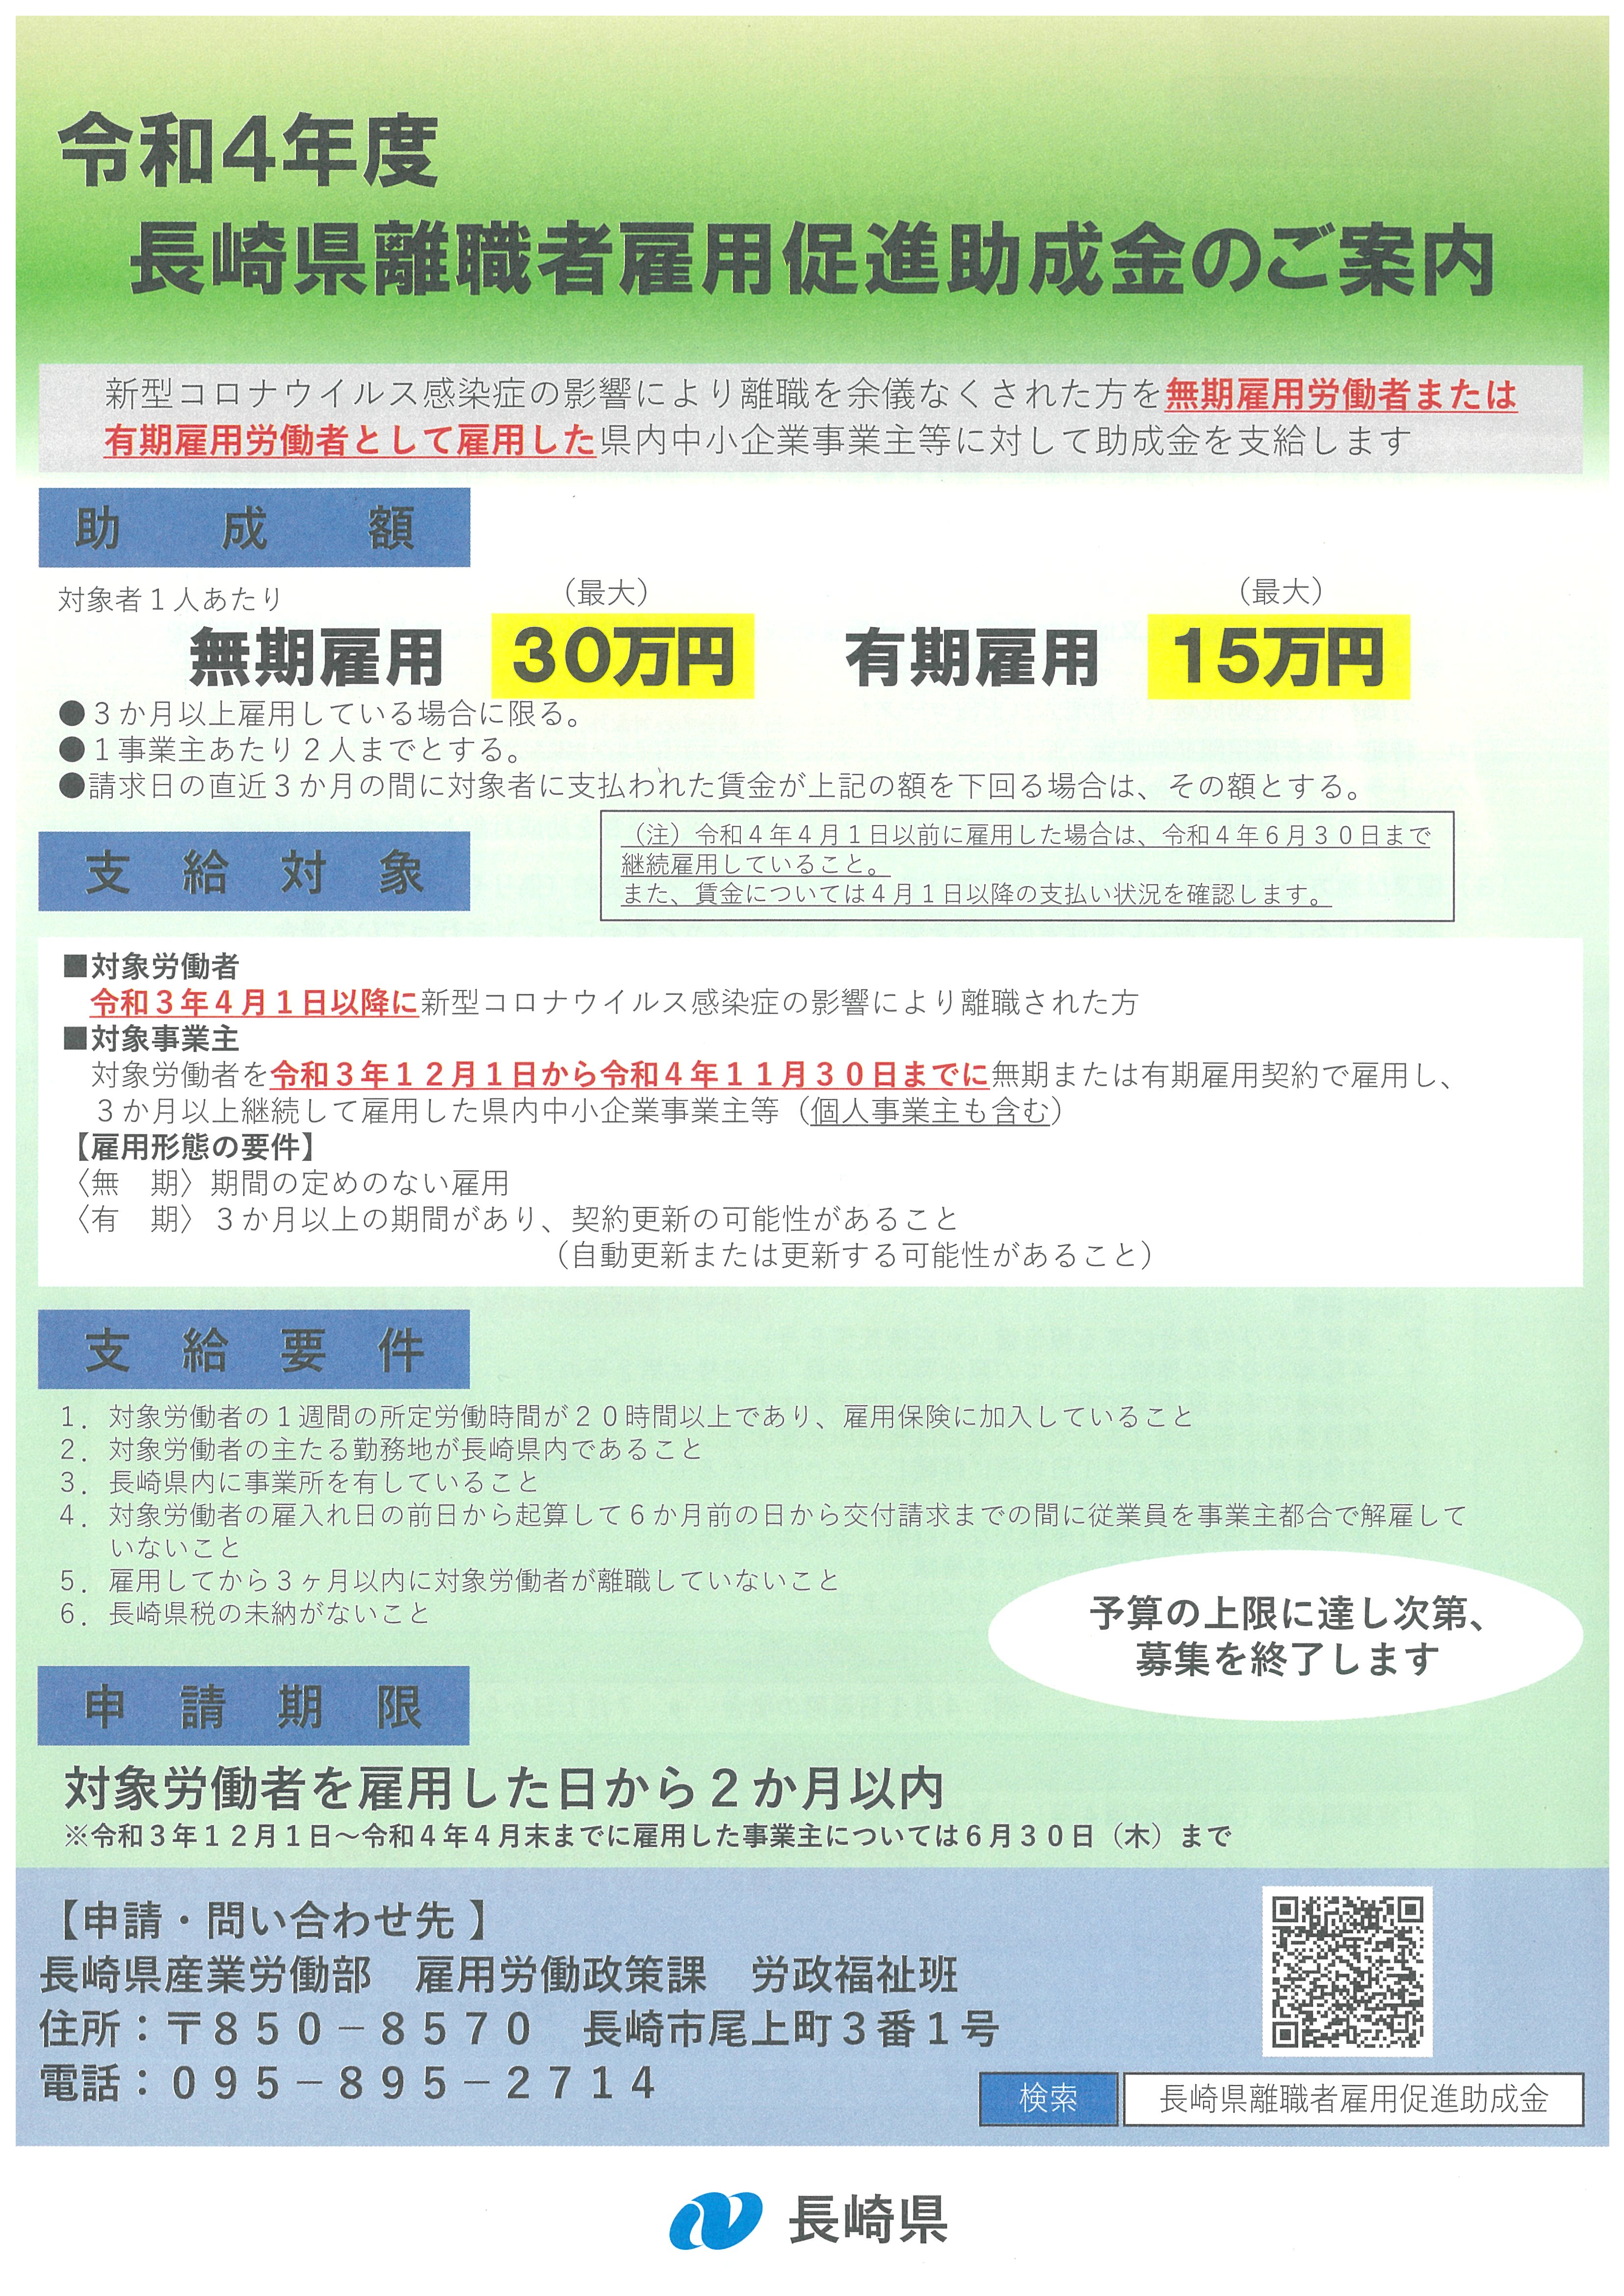 令和4年度 長崎県離職者雇用促進助成金のお知らせ